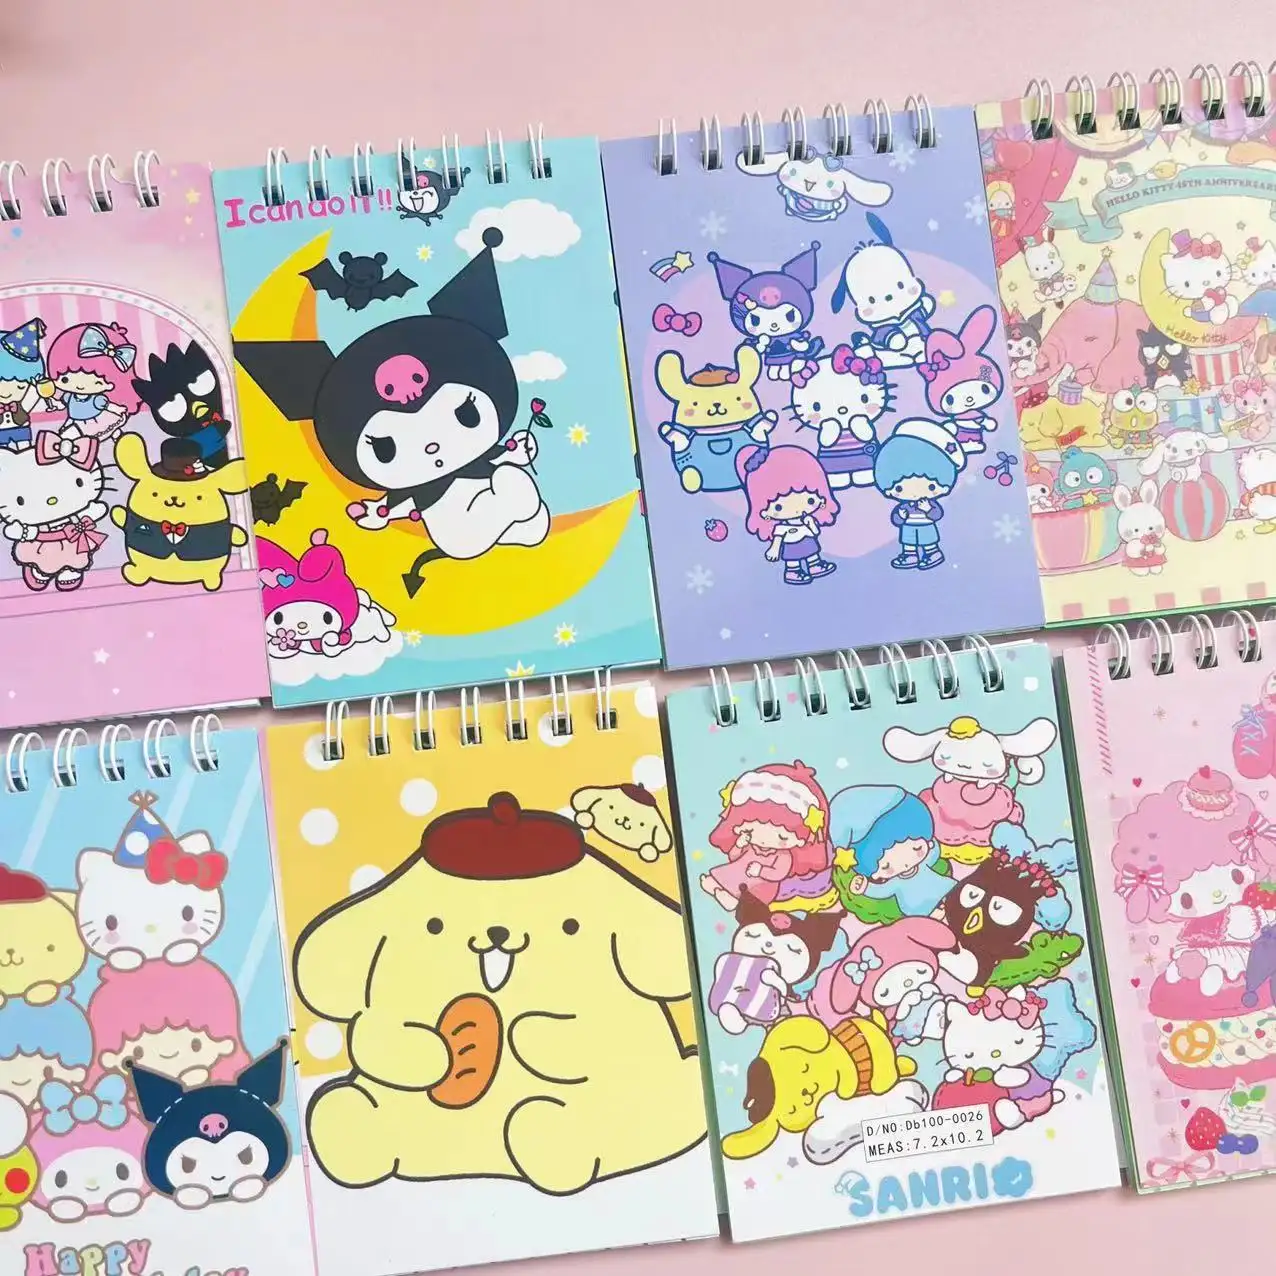 دفتر صغير لطيفة من Kawaii بسعر الجملة مُزين بملاحظات عائلية ملفوفة على شكل حيوانات أليفة لطيفة على شكل Kitty/Kuromi/Sanni ويمكن تقديمها كهدية صغيرة للطلاب